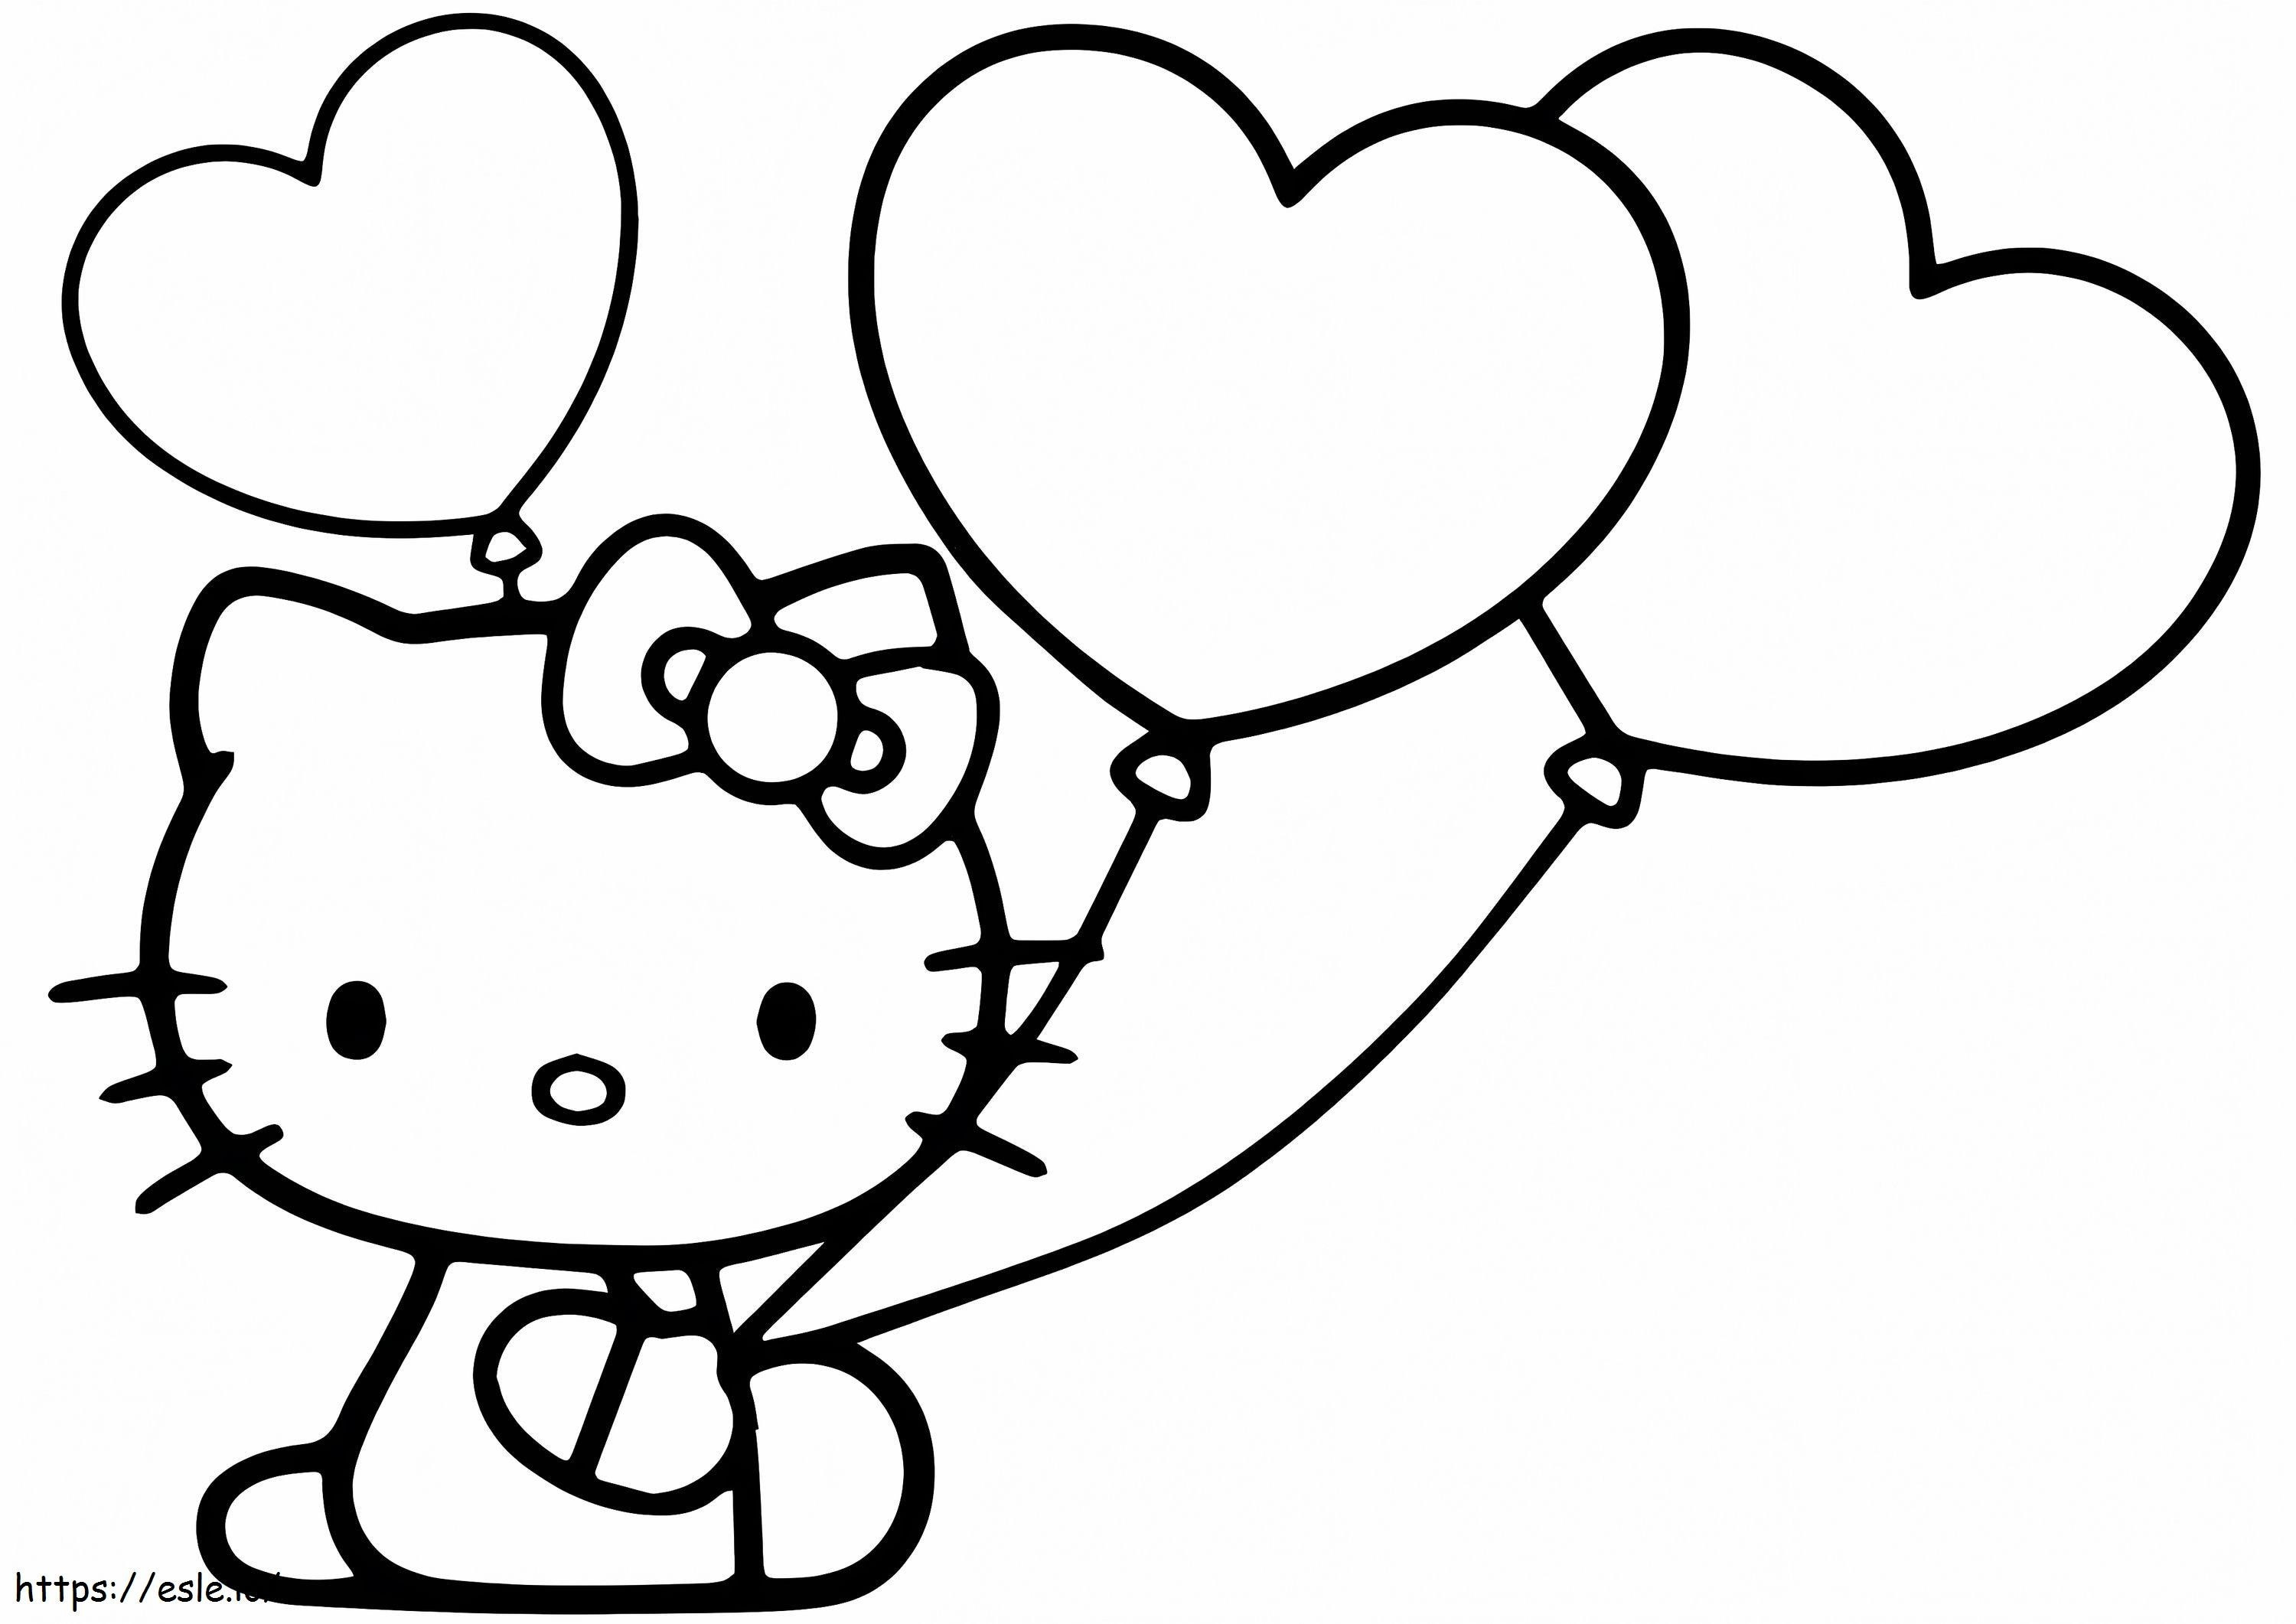 Hello Kitty com balões de coração para colorir